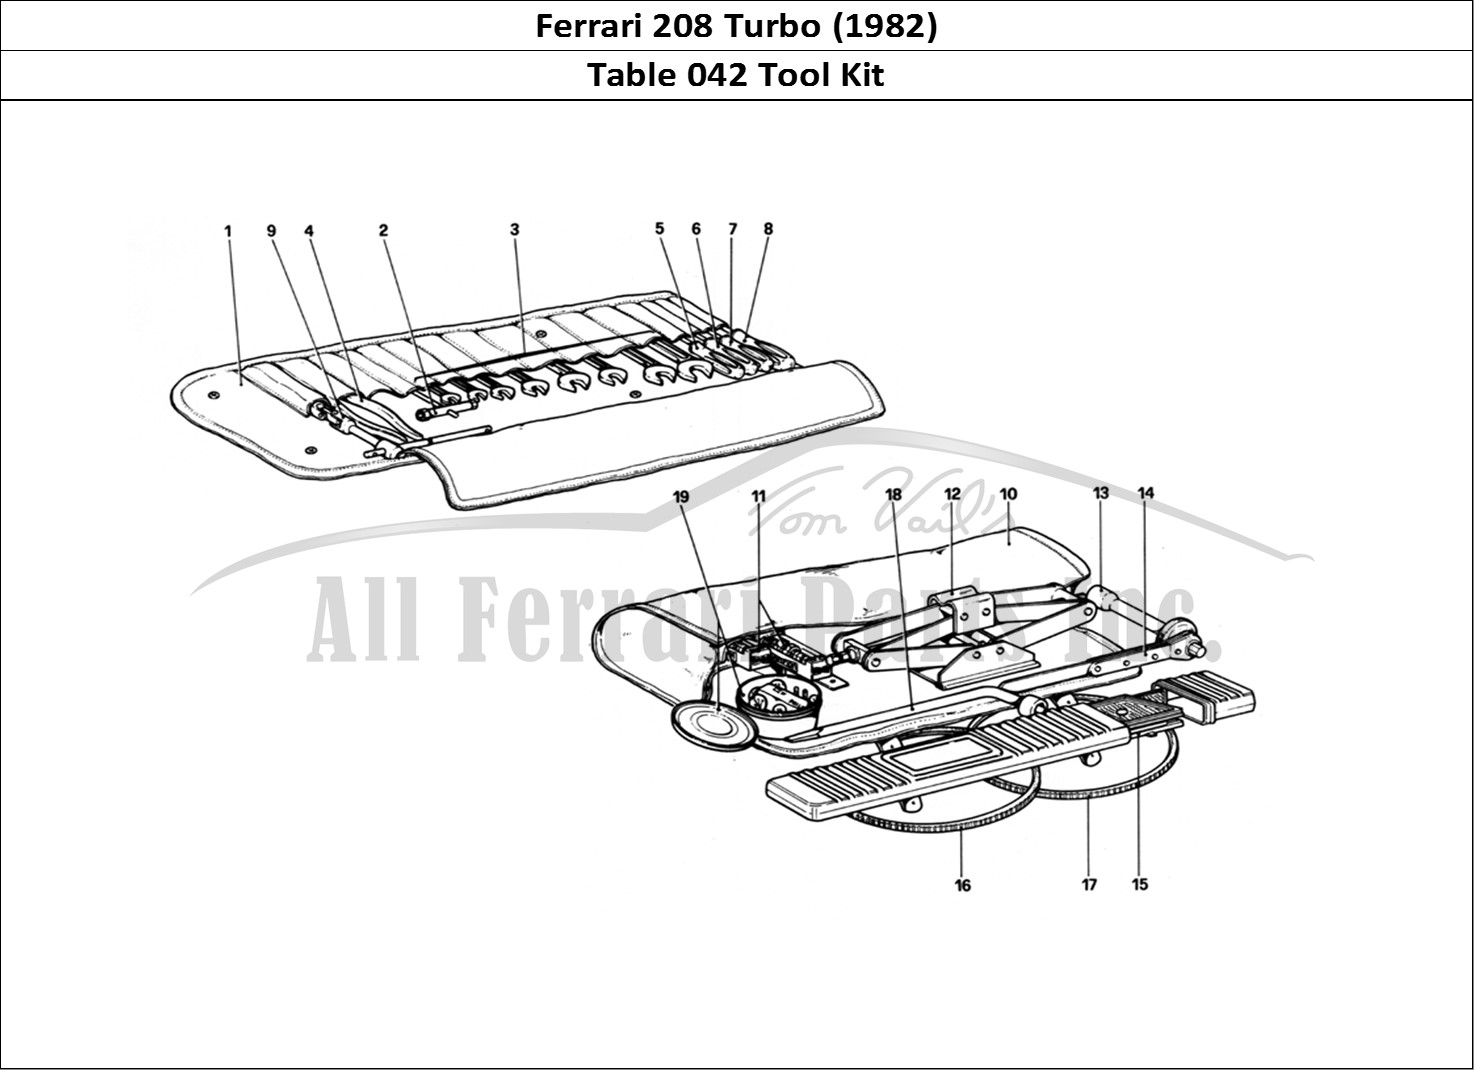 Ferrari Parts Ferrari 208 Turbo (1982) Page 042 Tool - Kit